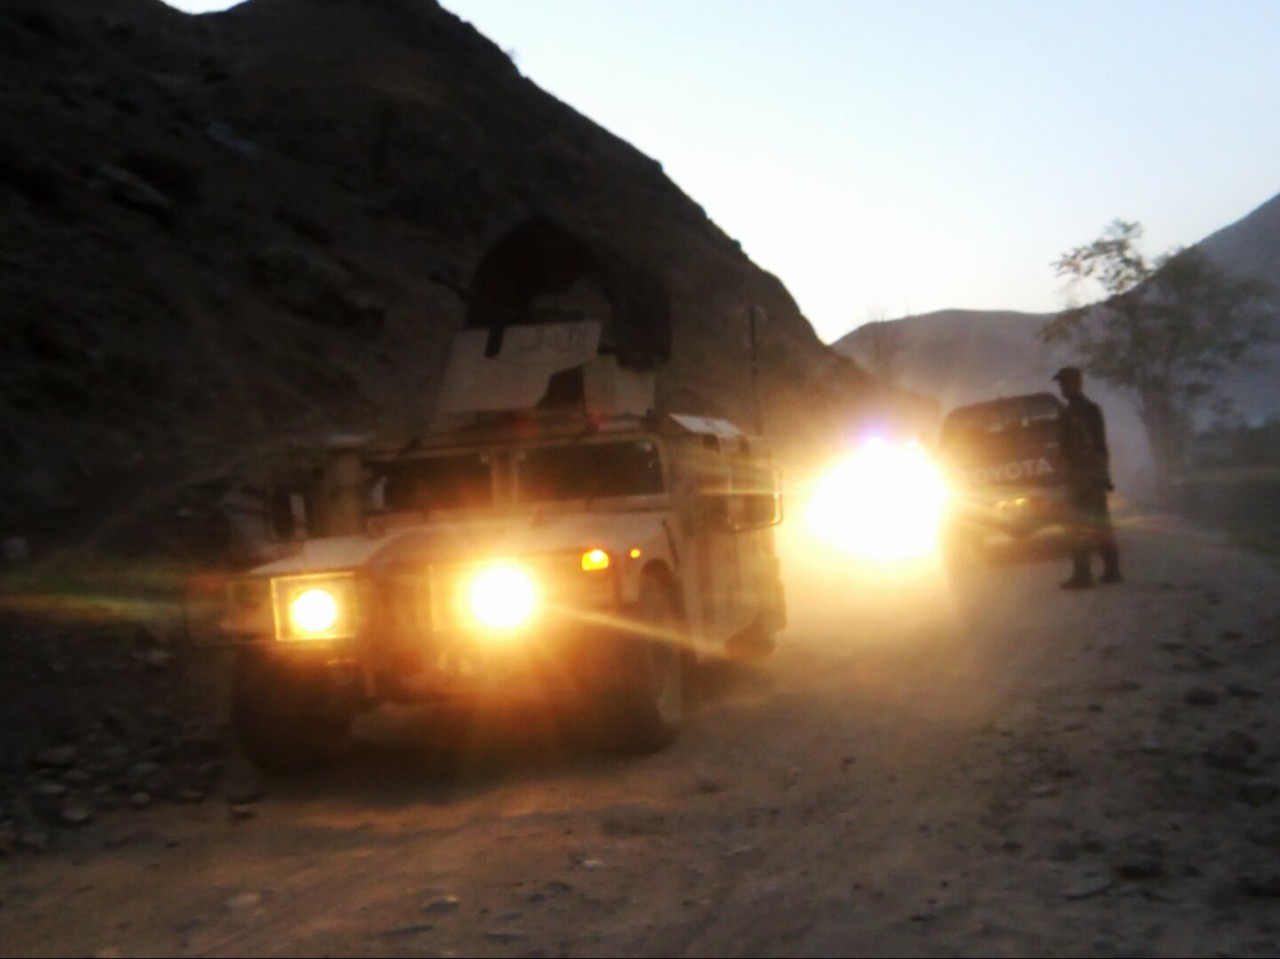 Humvee Afghanistan